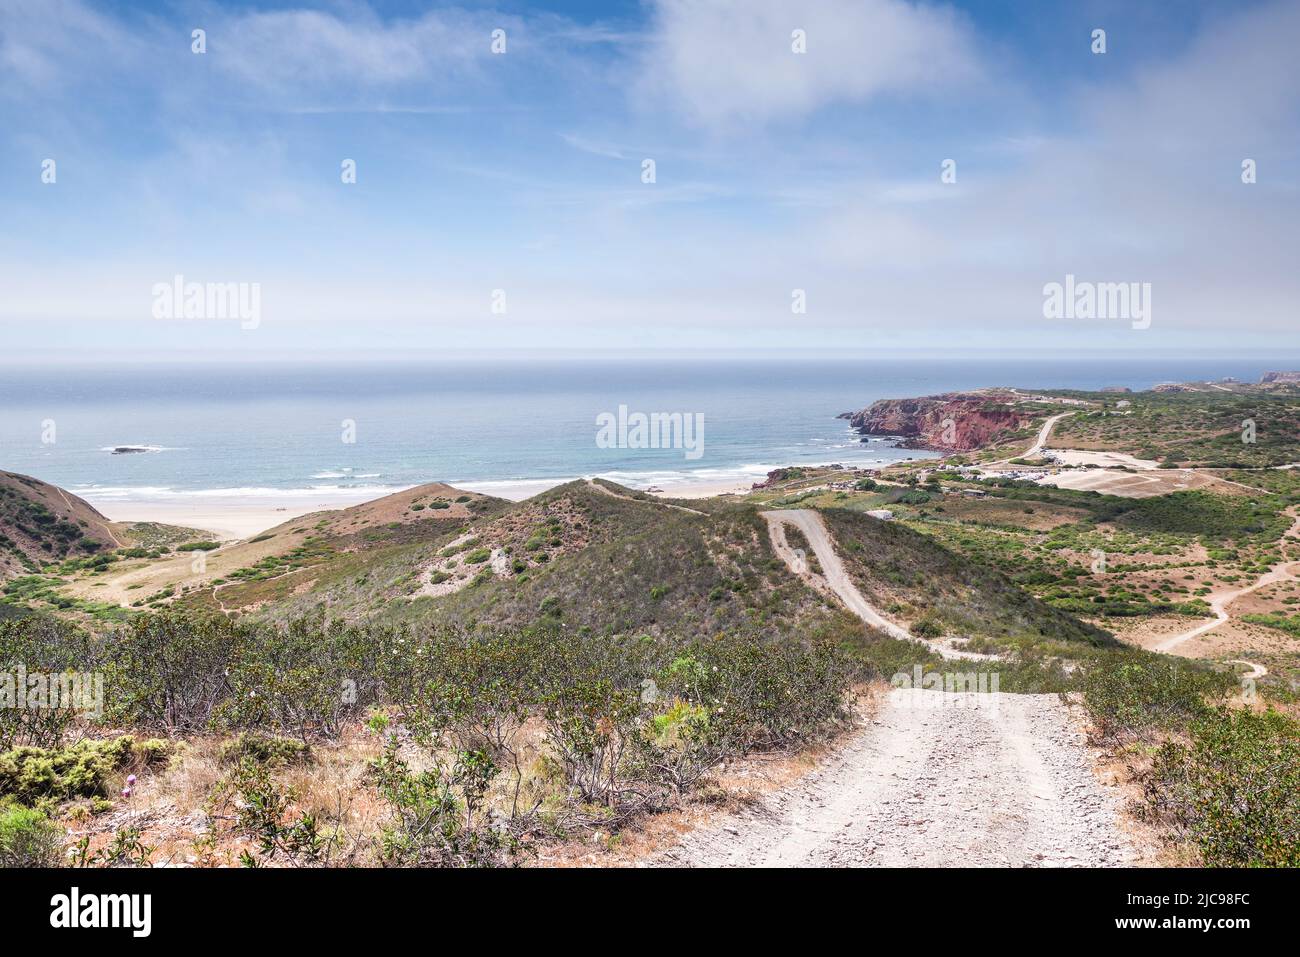 Fabulosas vistas de Praia do Amado y la costa suroeste del Algarve desde la cima de una pista de tierra rural (Algarve, Portugal) Foto de stock